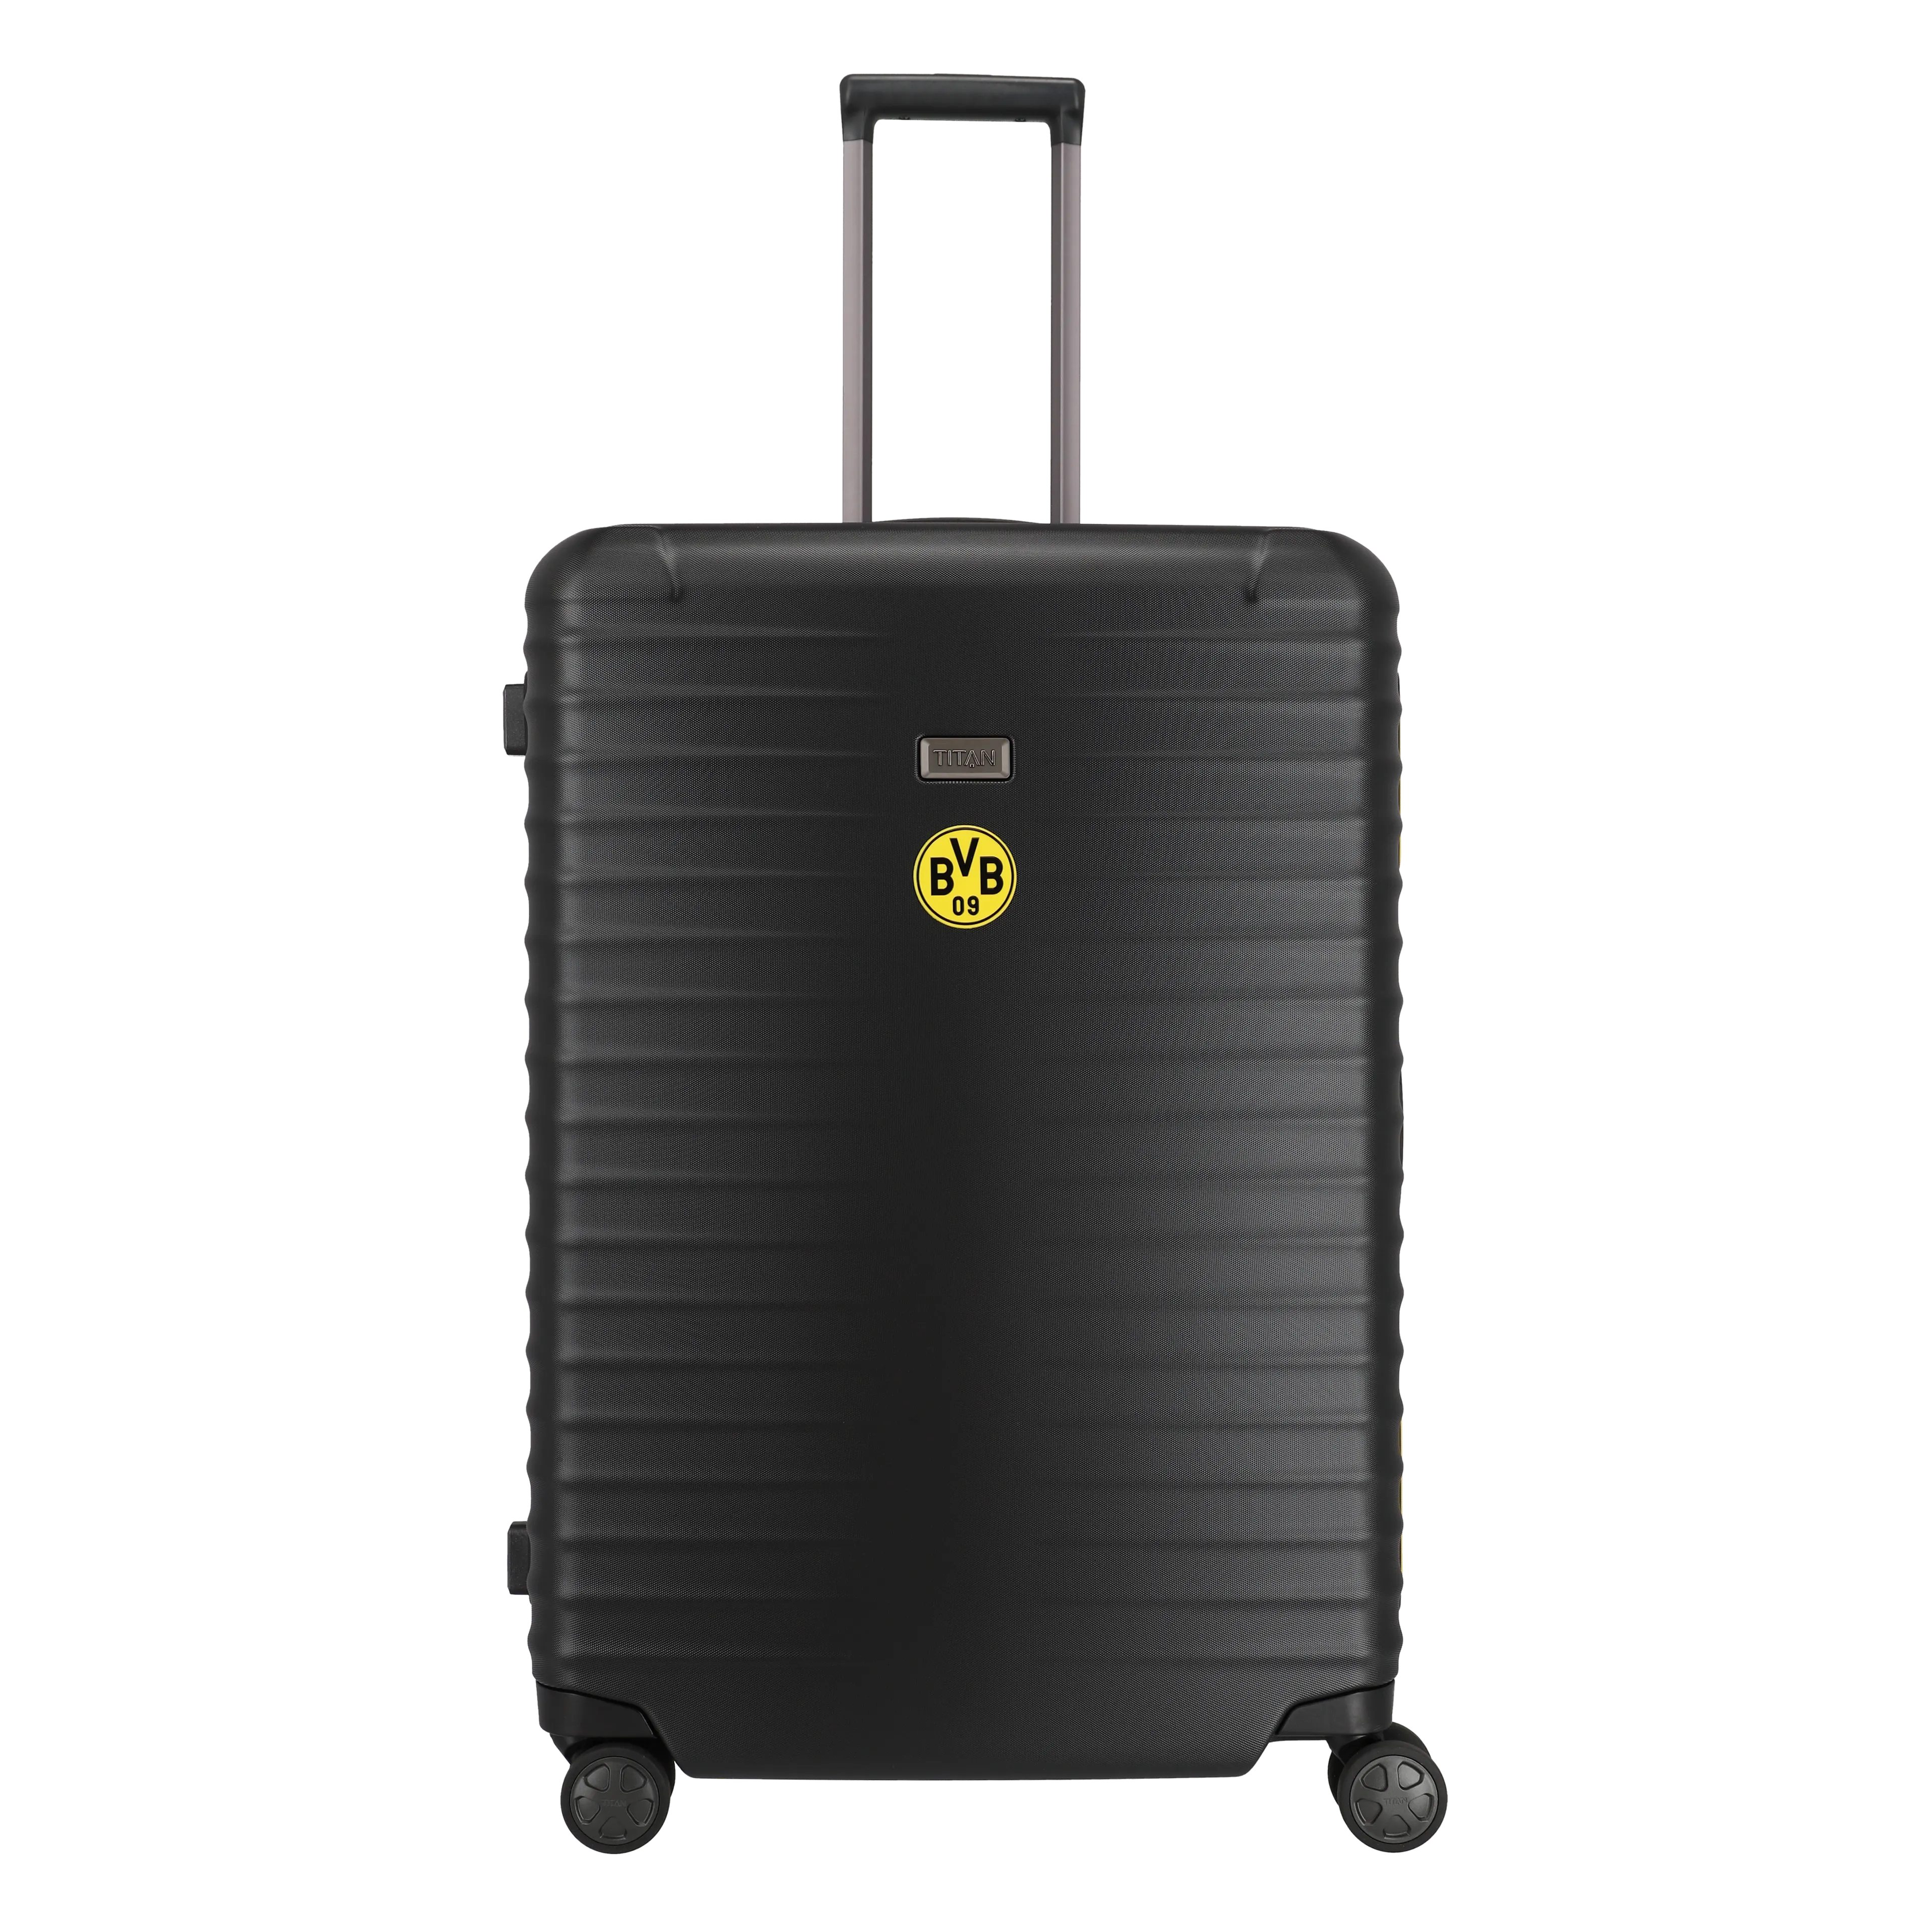 Ein TITAN Koffer der Serie LITRON Frame BVB Edition Frontansicht in schwarz/gelb Größe L 75cm